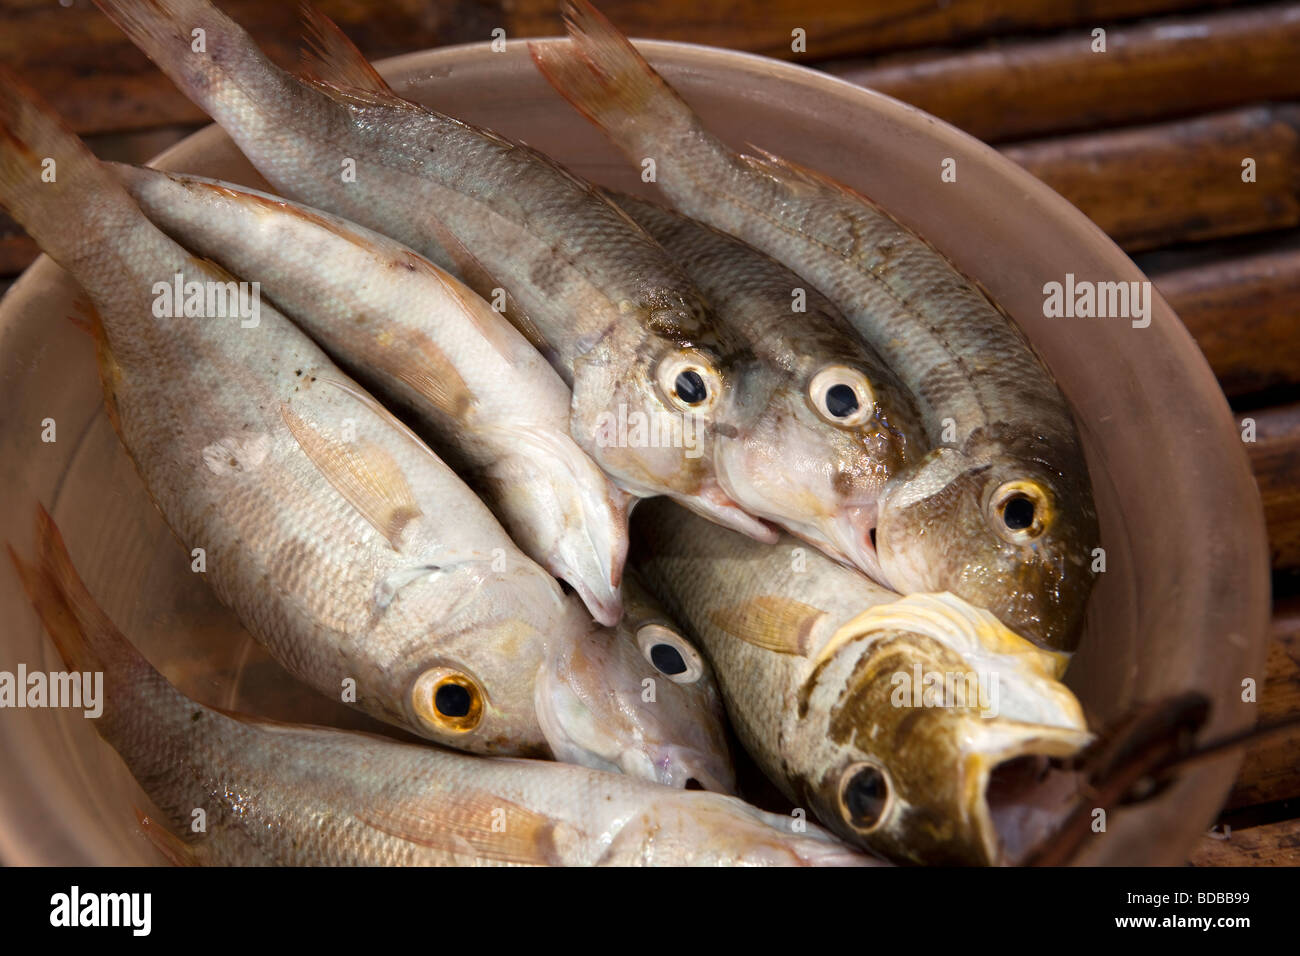 Indonesien Sulawesi Kaledupa Insel Ambuea Dorf lokalen Fischmarkt Platte mit Fisch zu verkaufen Stockfoto